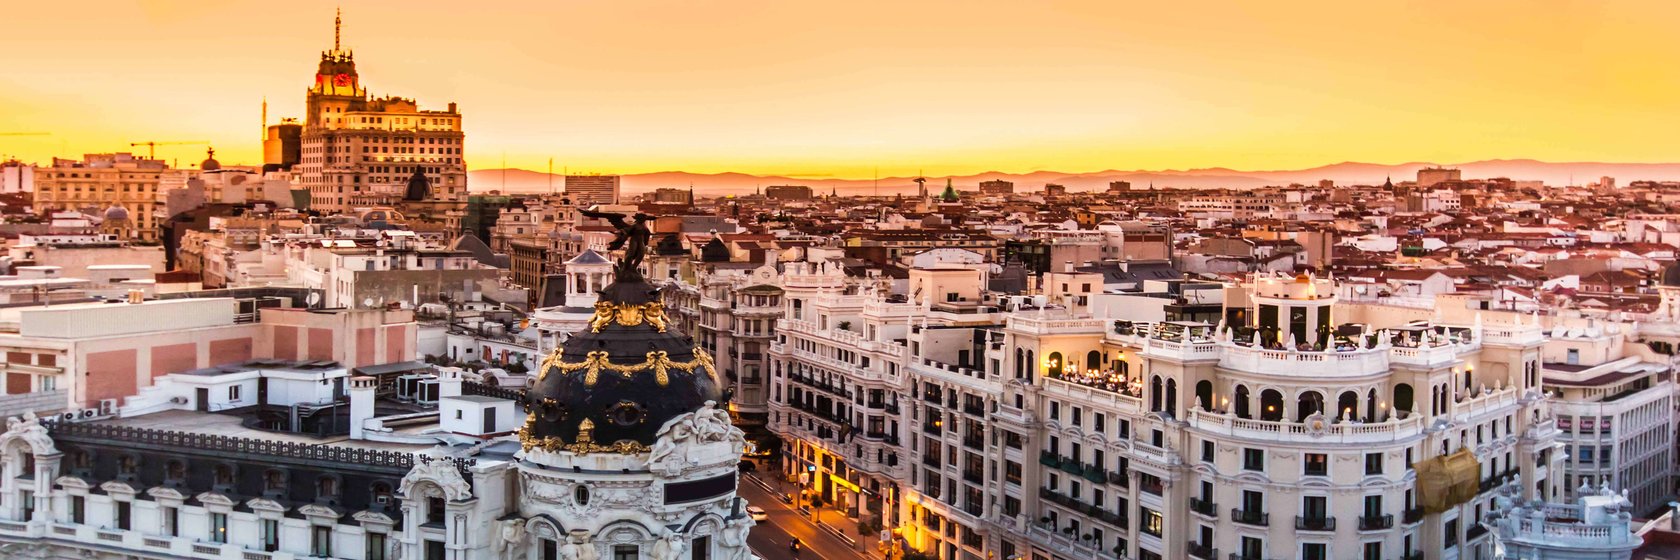 Náboženství, historie a kultura v Madridu a okolí